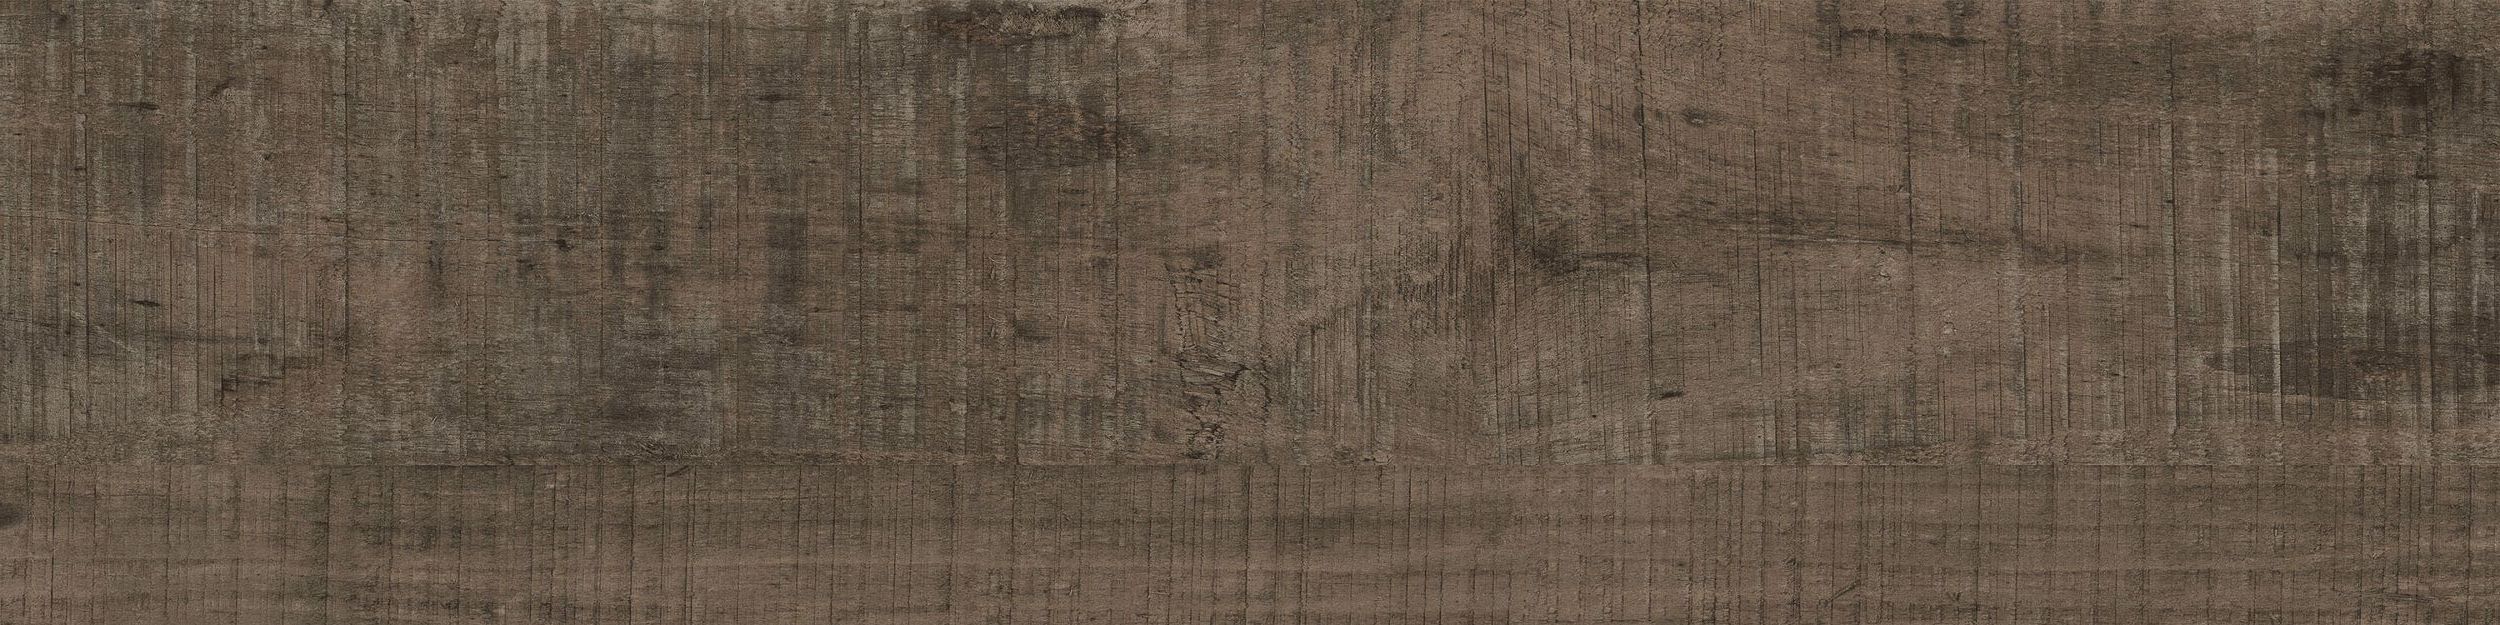 Textured Woodgrains LVT In Distressed Walnut imagen número 1